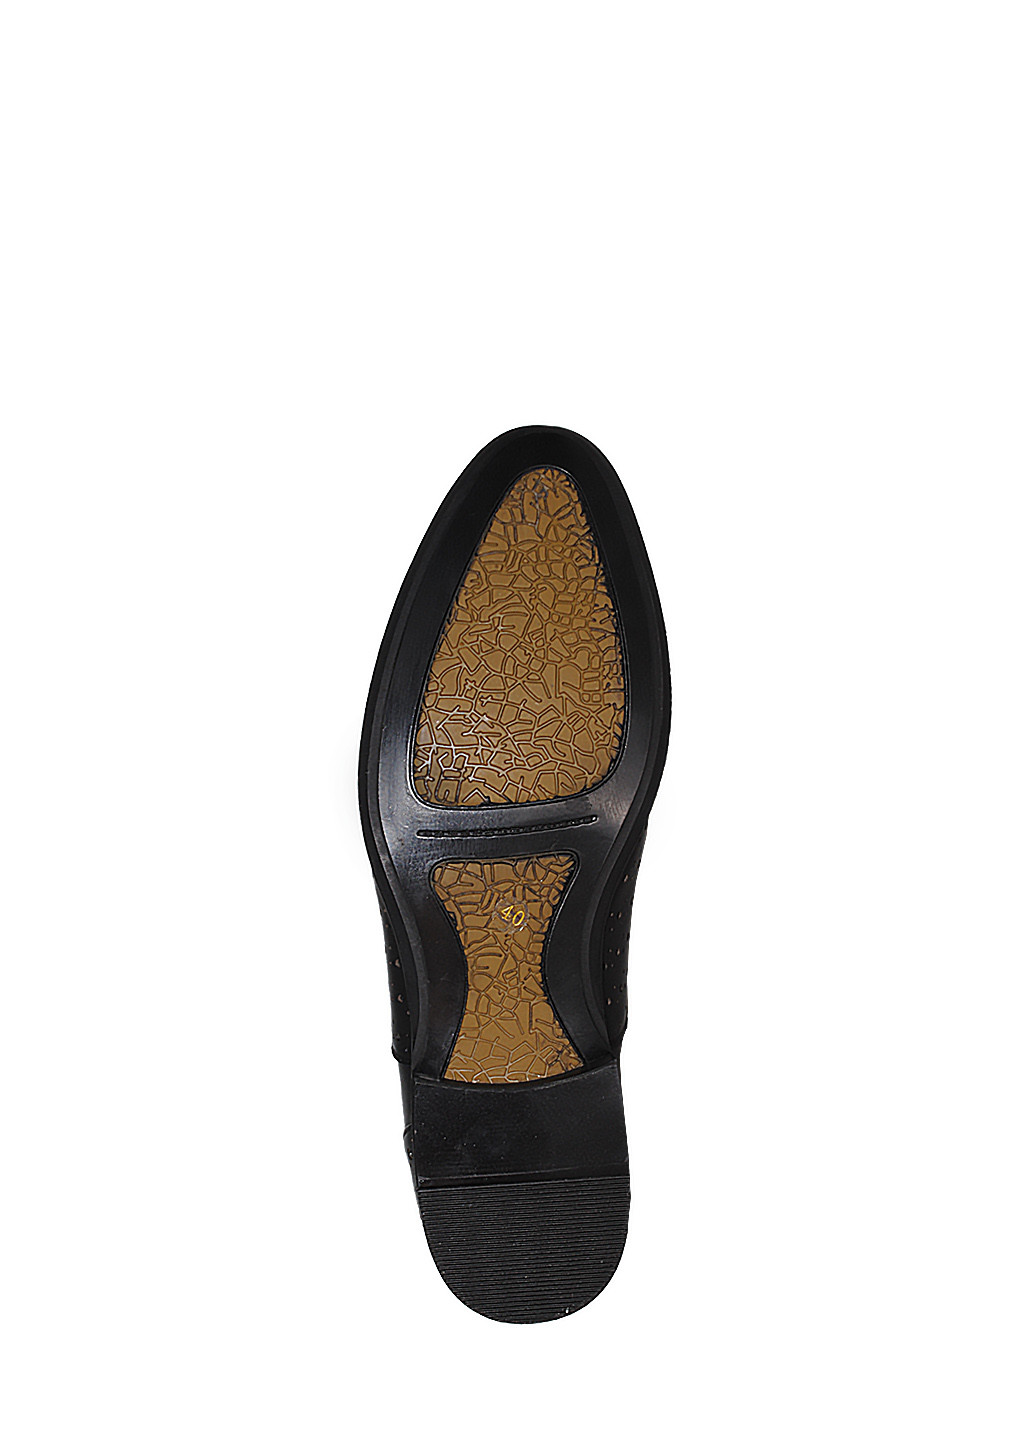 Черные туфли rba0529-2j черный Miratti